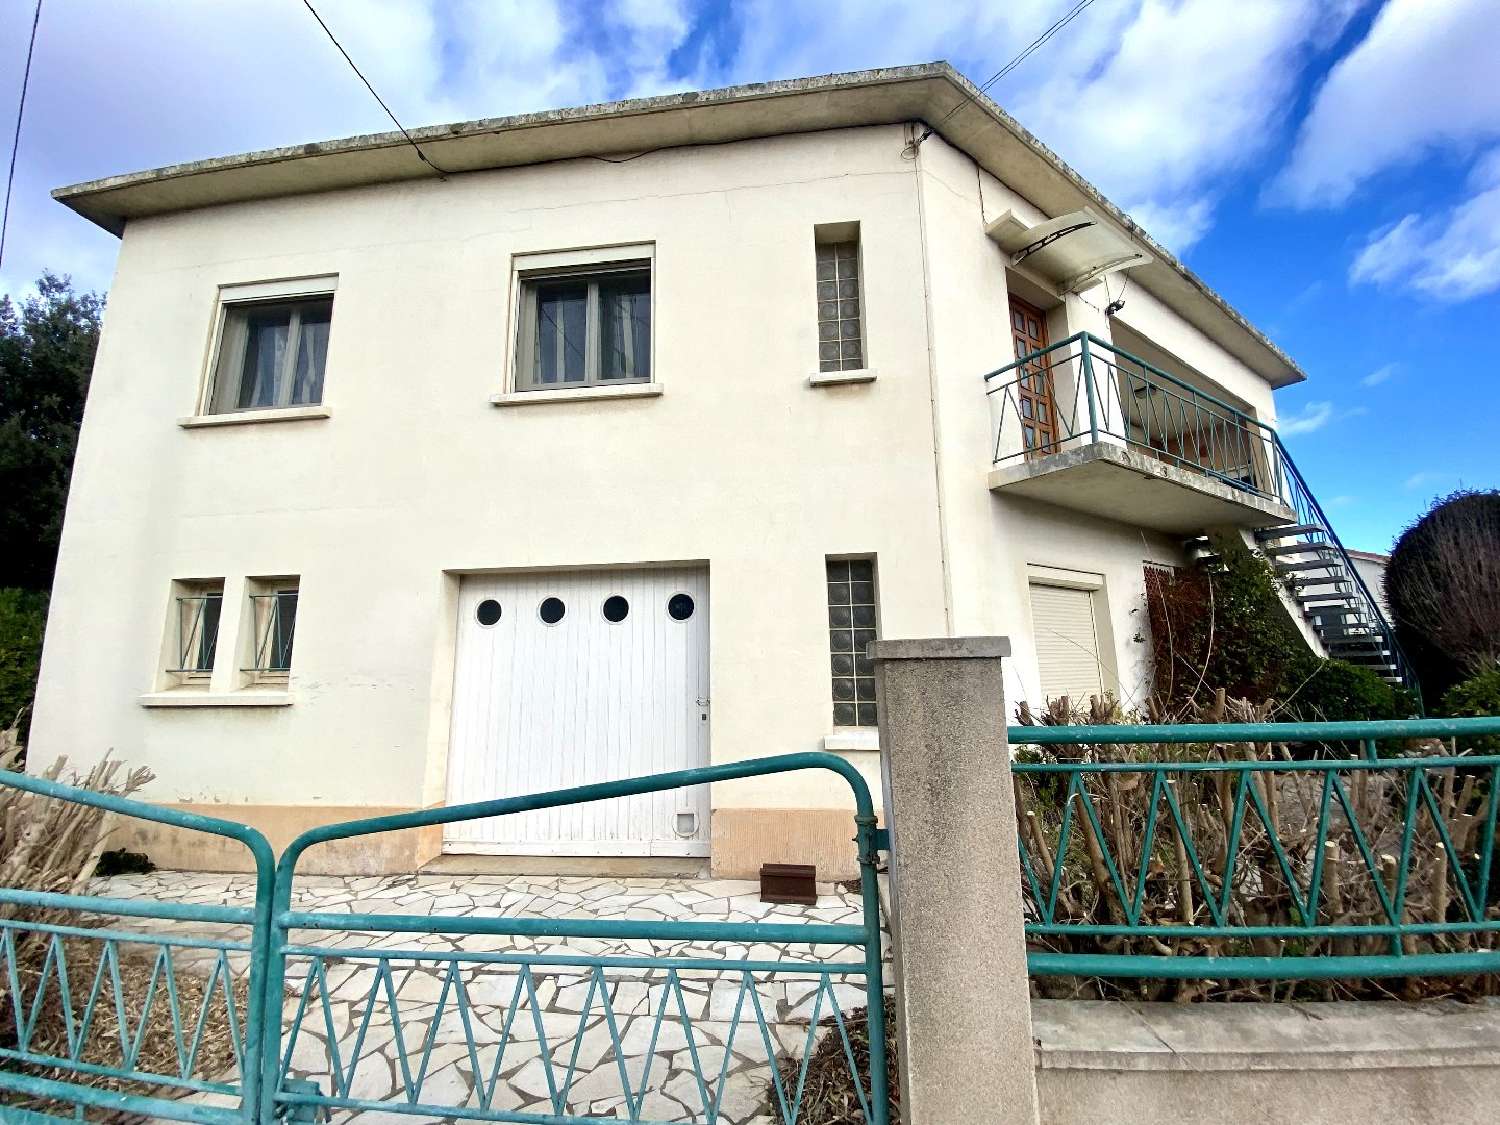  à vendre maison Agde Hérault 2